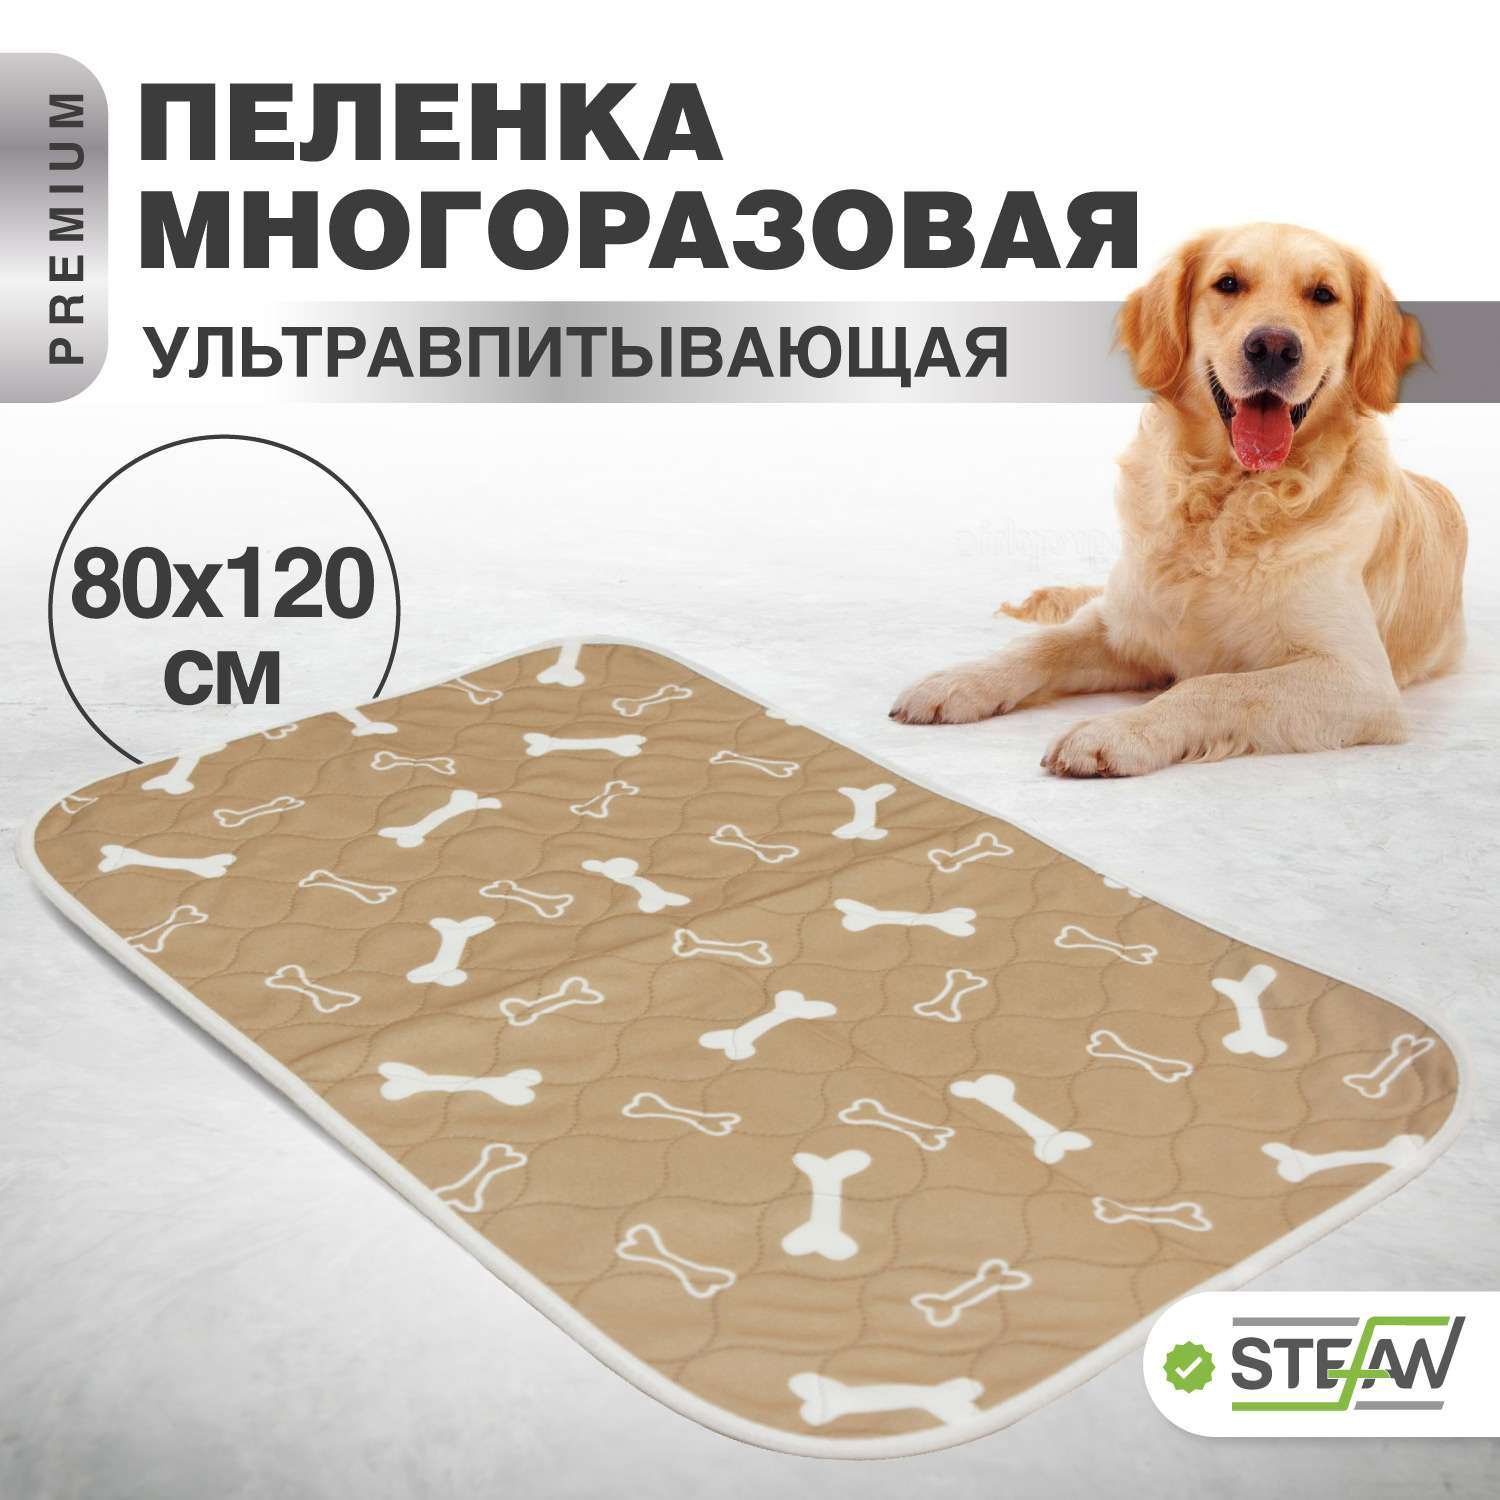 Пеленка для животных Stefan впитывающая многоразовая коричневая 80х120 см - фото 1